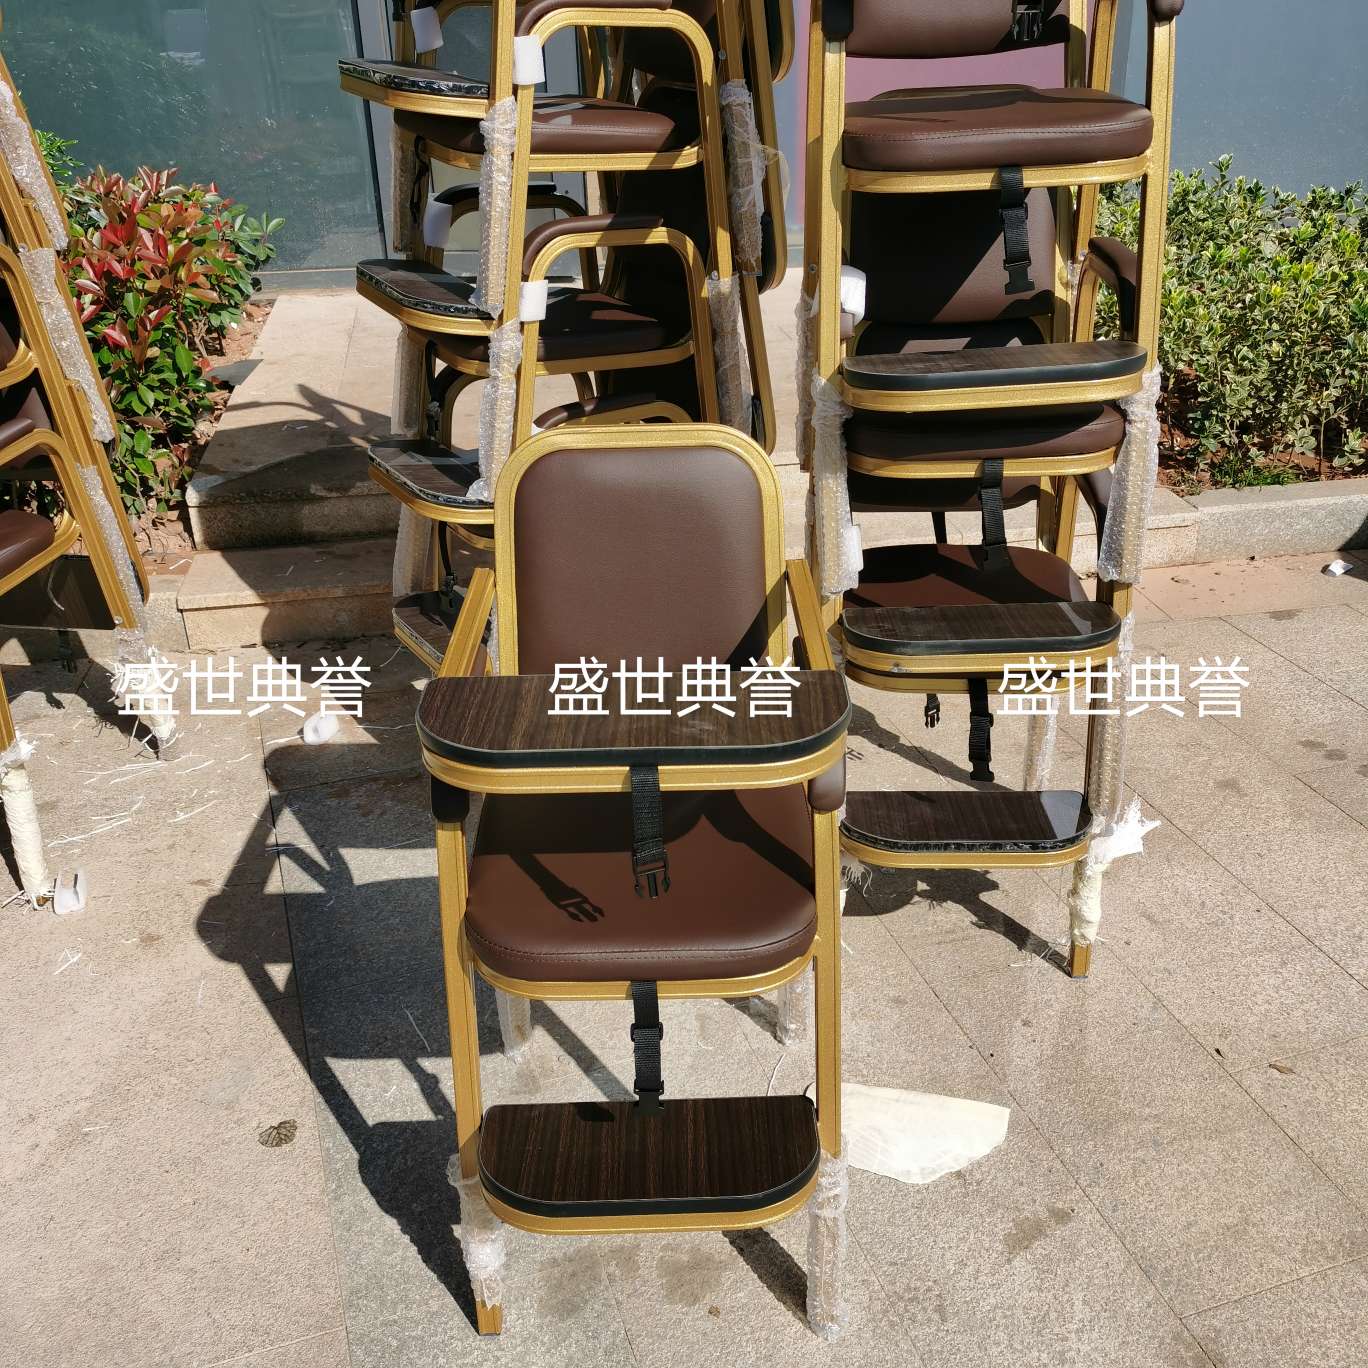 上海五星级酒店宴会厅宝宝餐椅饭店包厢儿童就餐椅子铝合金宝宝椅产品图